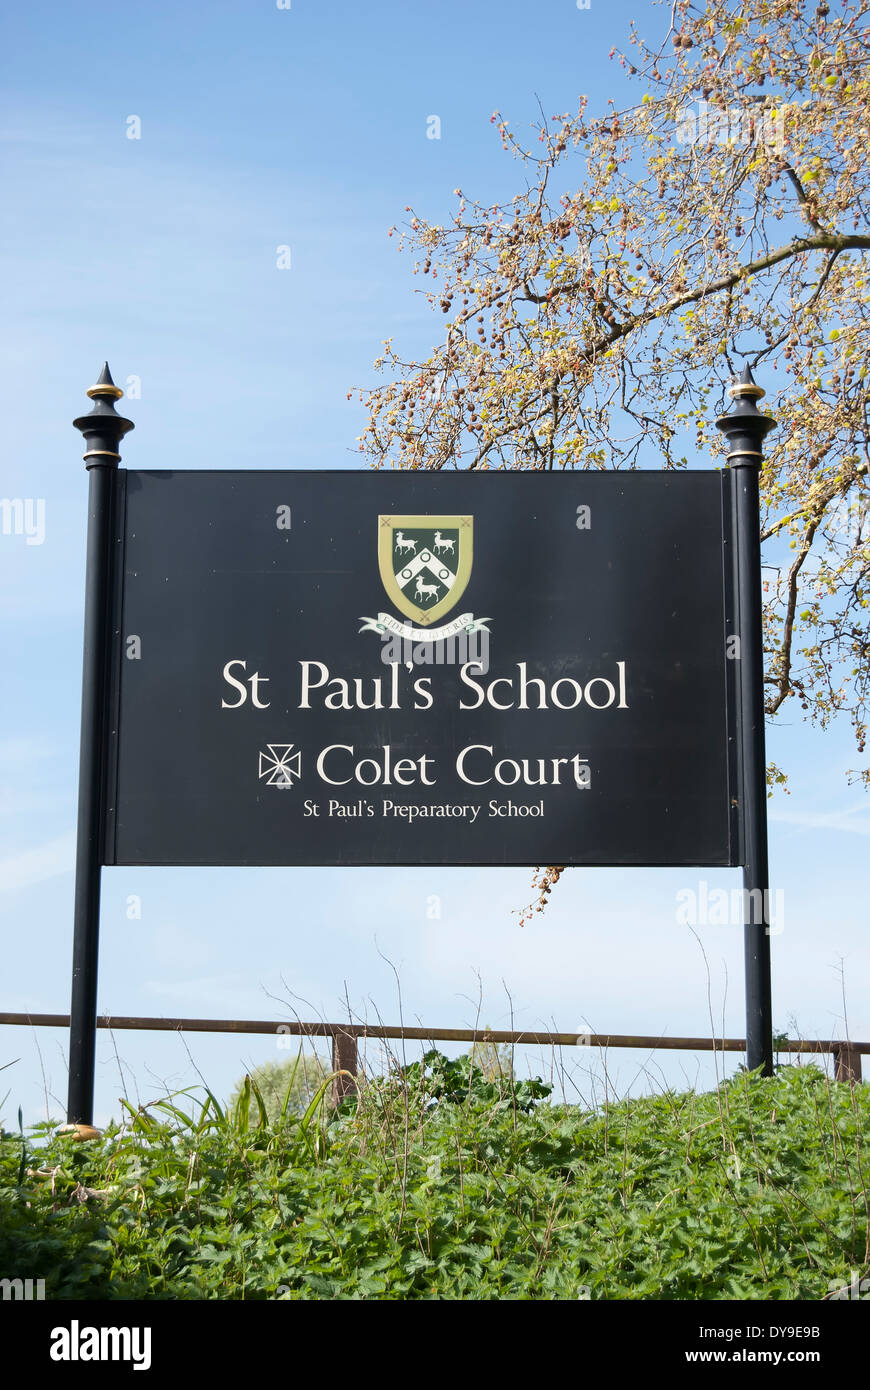 Segno per san Paolo scuola e corte colet, Barnes, a sud-ovest di Londra - Inghilterra Foto Stock